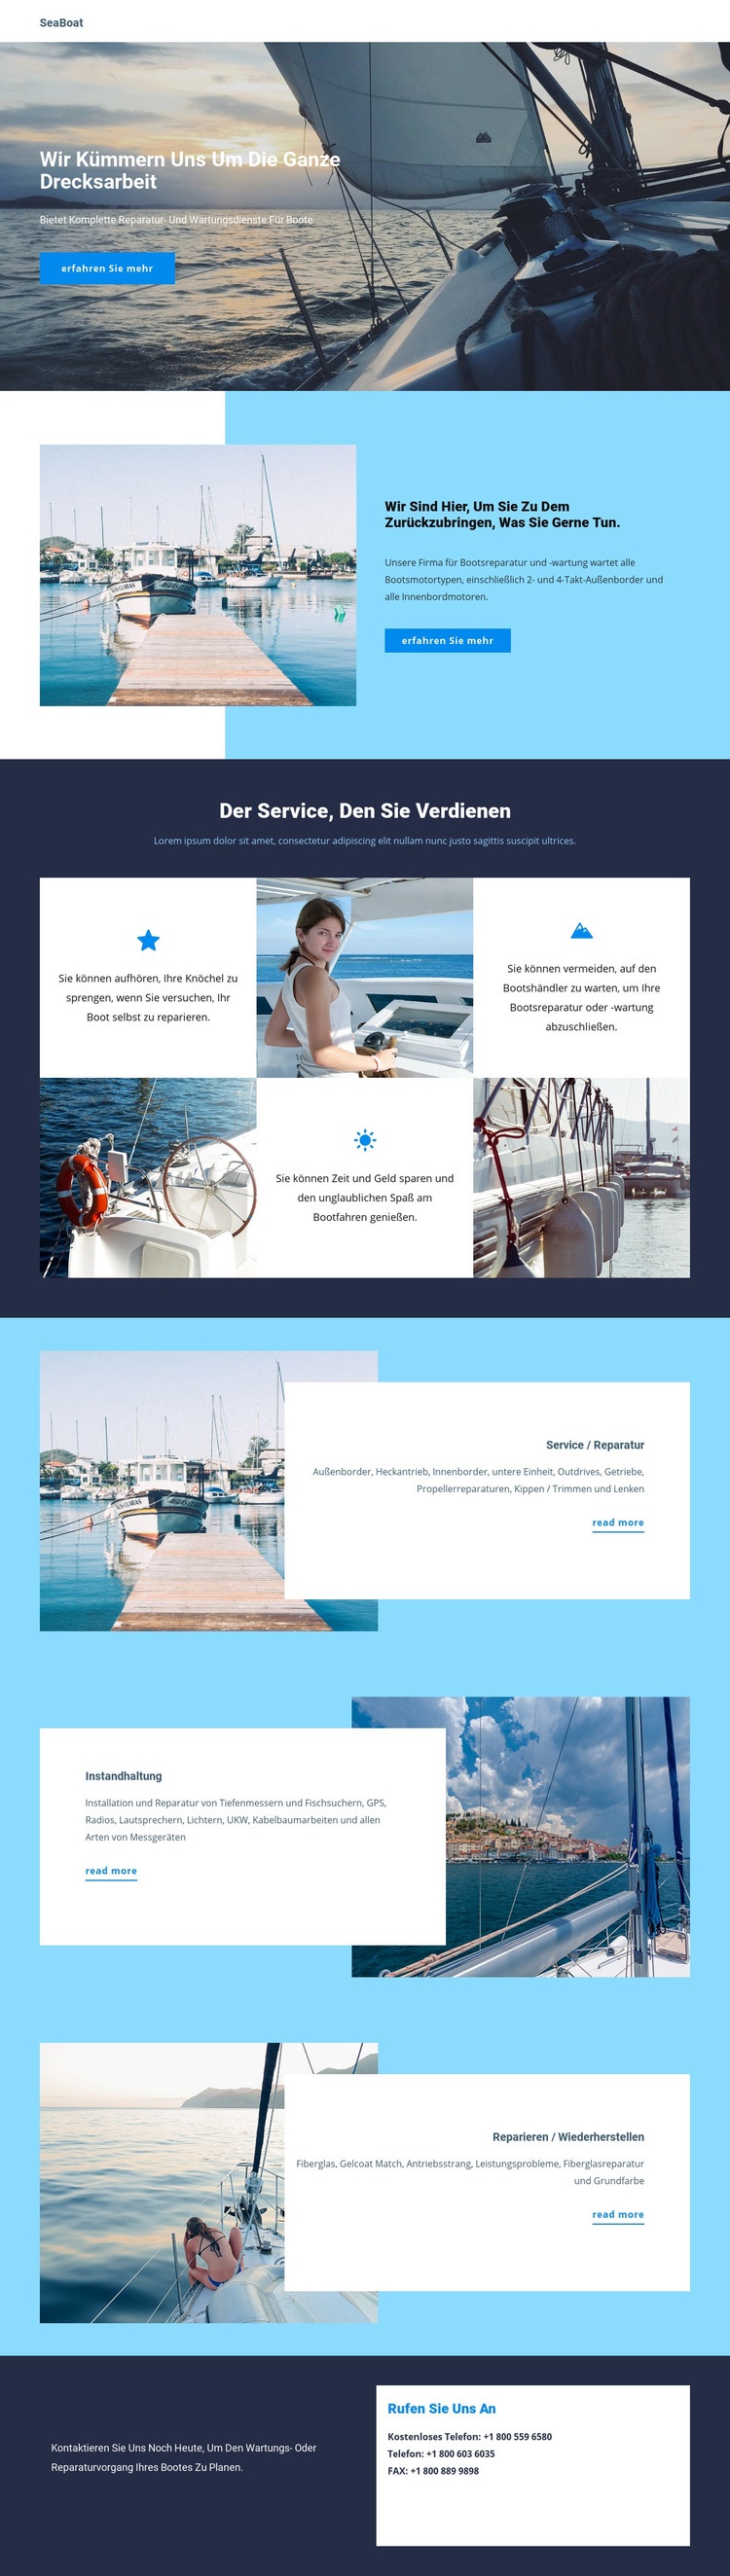 Reisen Sie mit dem Seeboot HTML Website Builder